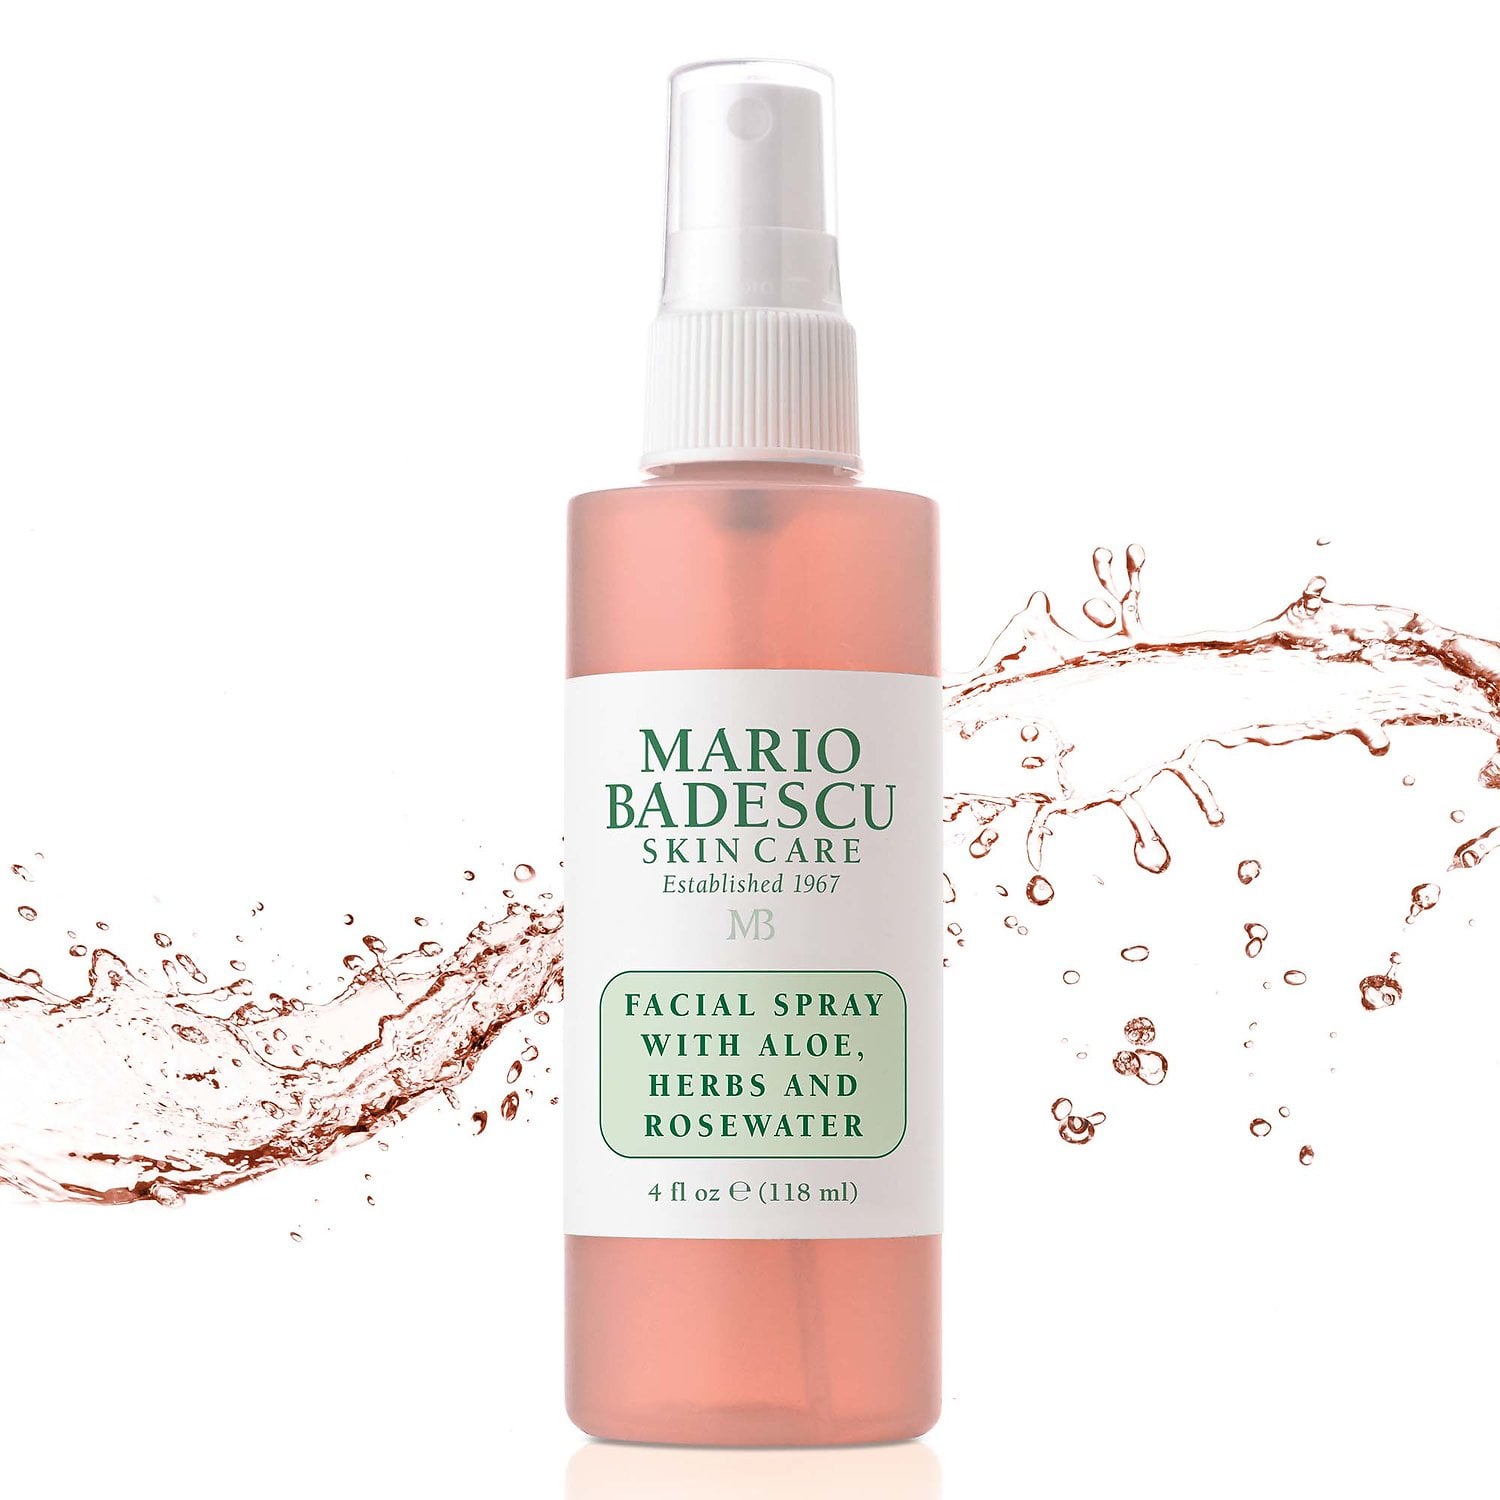 Mario Badescu México - Facial Spray with Aloe, Herbs and Rosewater | Beauty Box Mérida